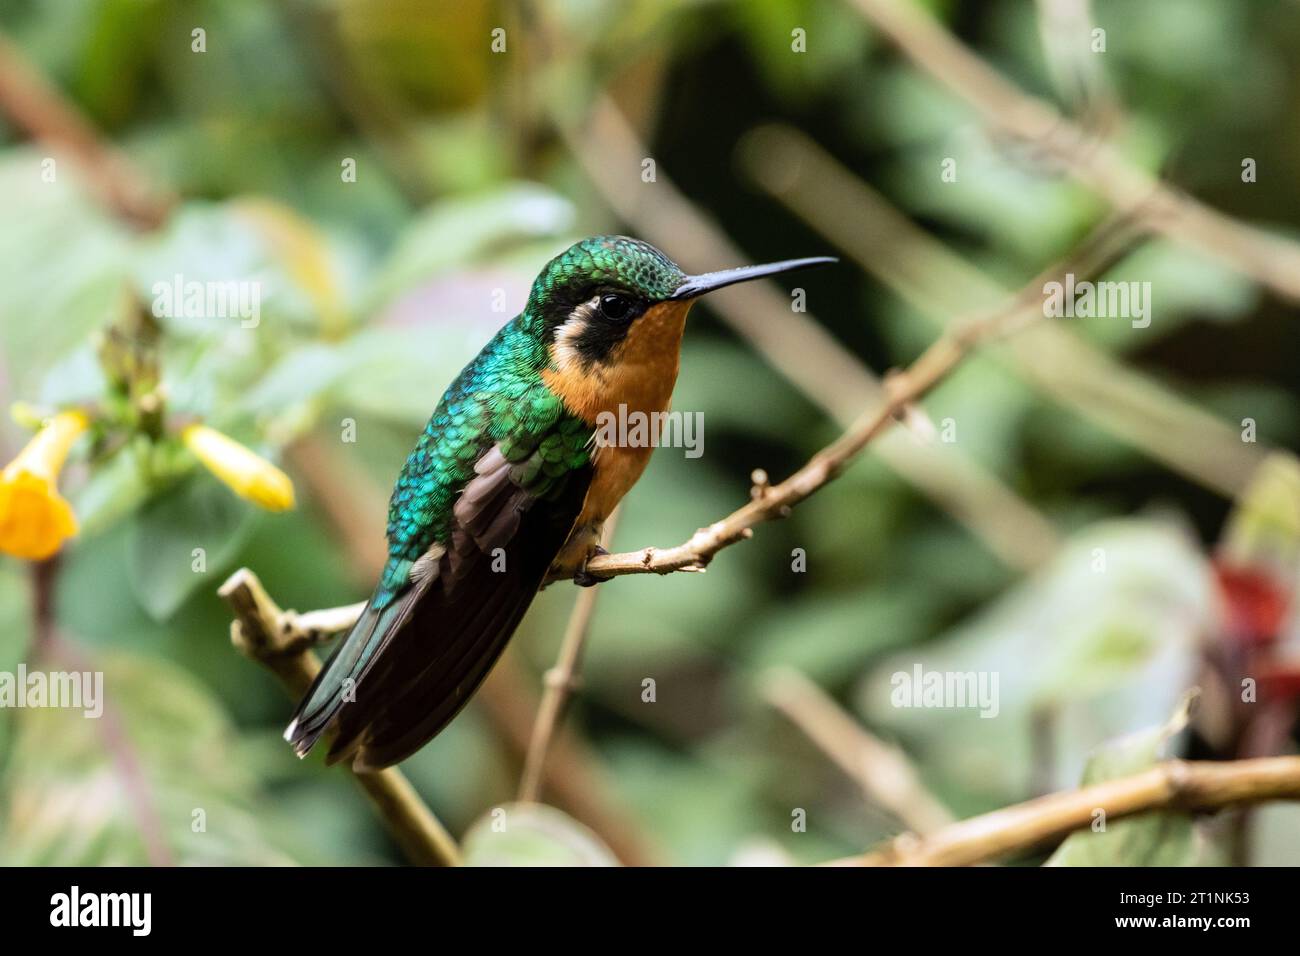 Primo piano della gemma di montagna dalla gola bianca, un colibrì endemico degli altopiani della Costa Rica e Panama. Foto Stock